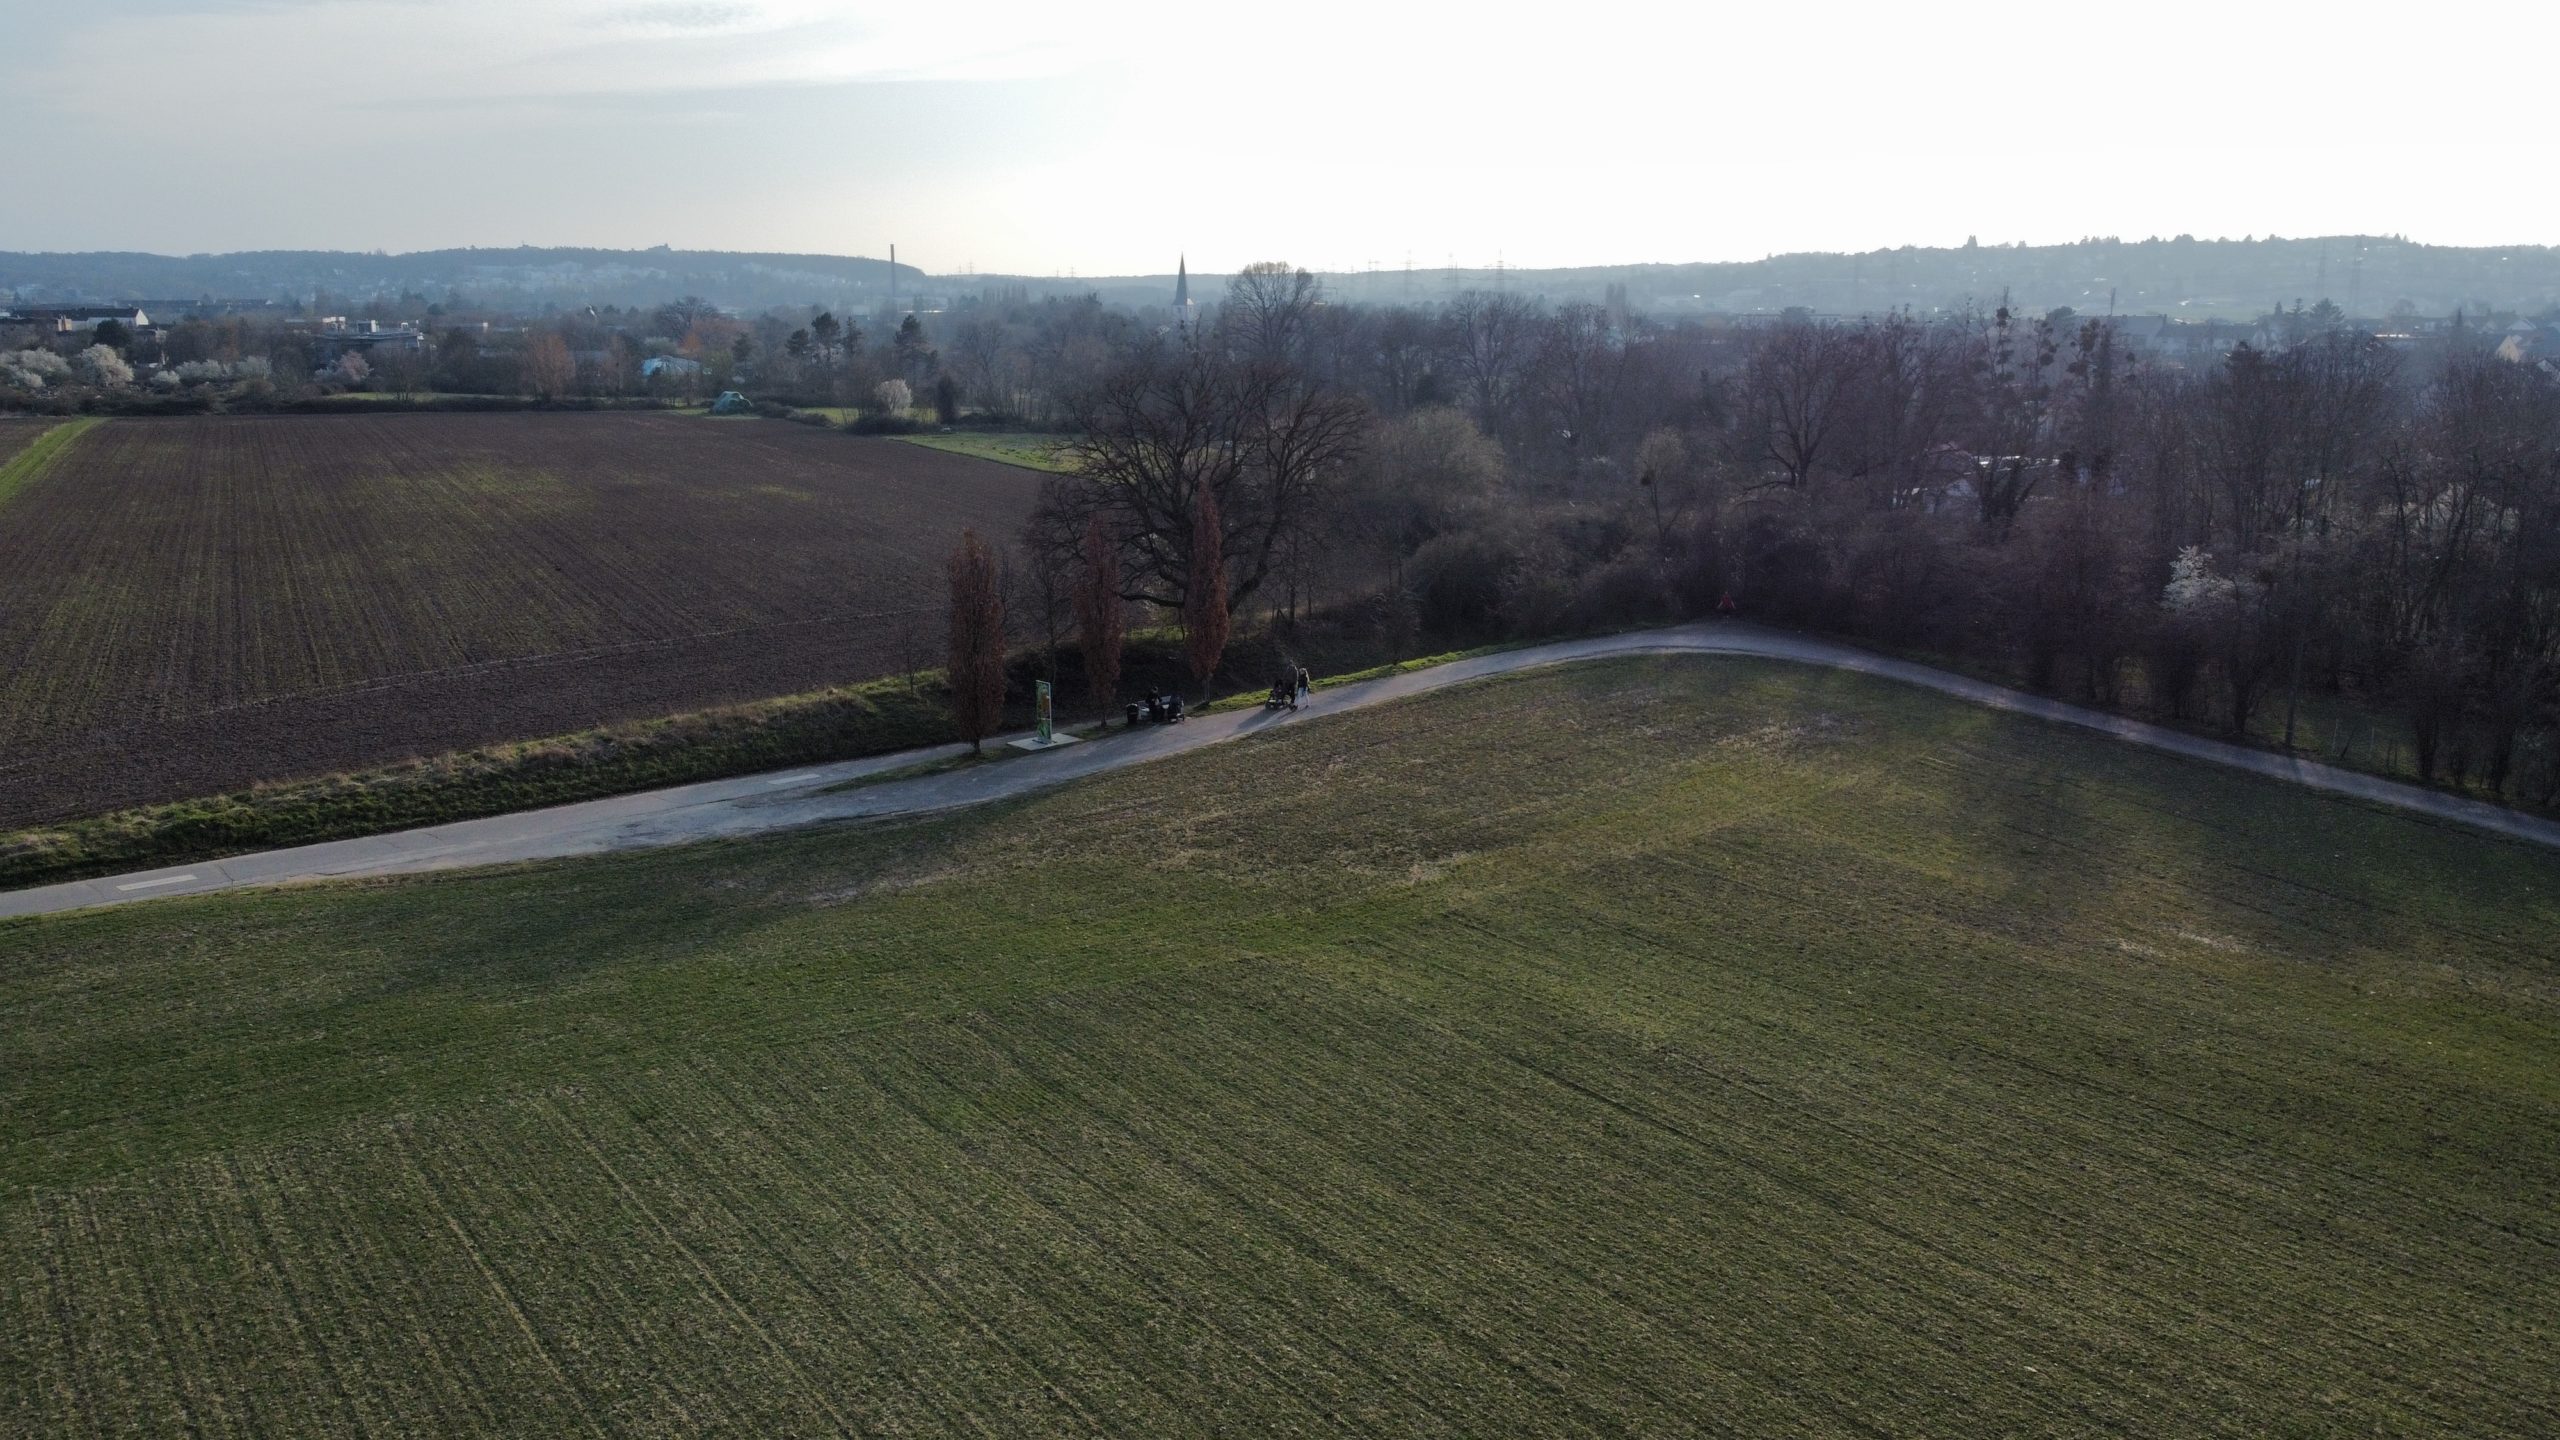 Blick von oben auf Felder, dazwischen ein Weg, am Horizont Häuser und eine hügelige Landschaft.